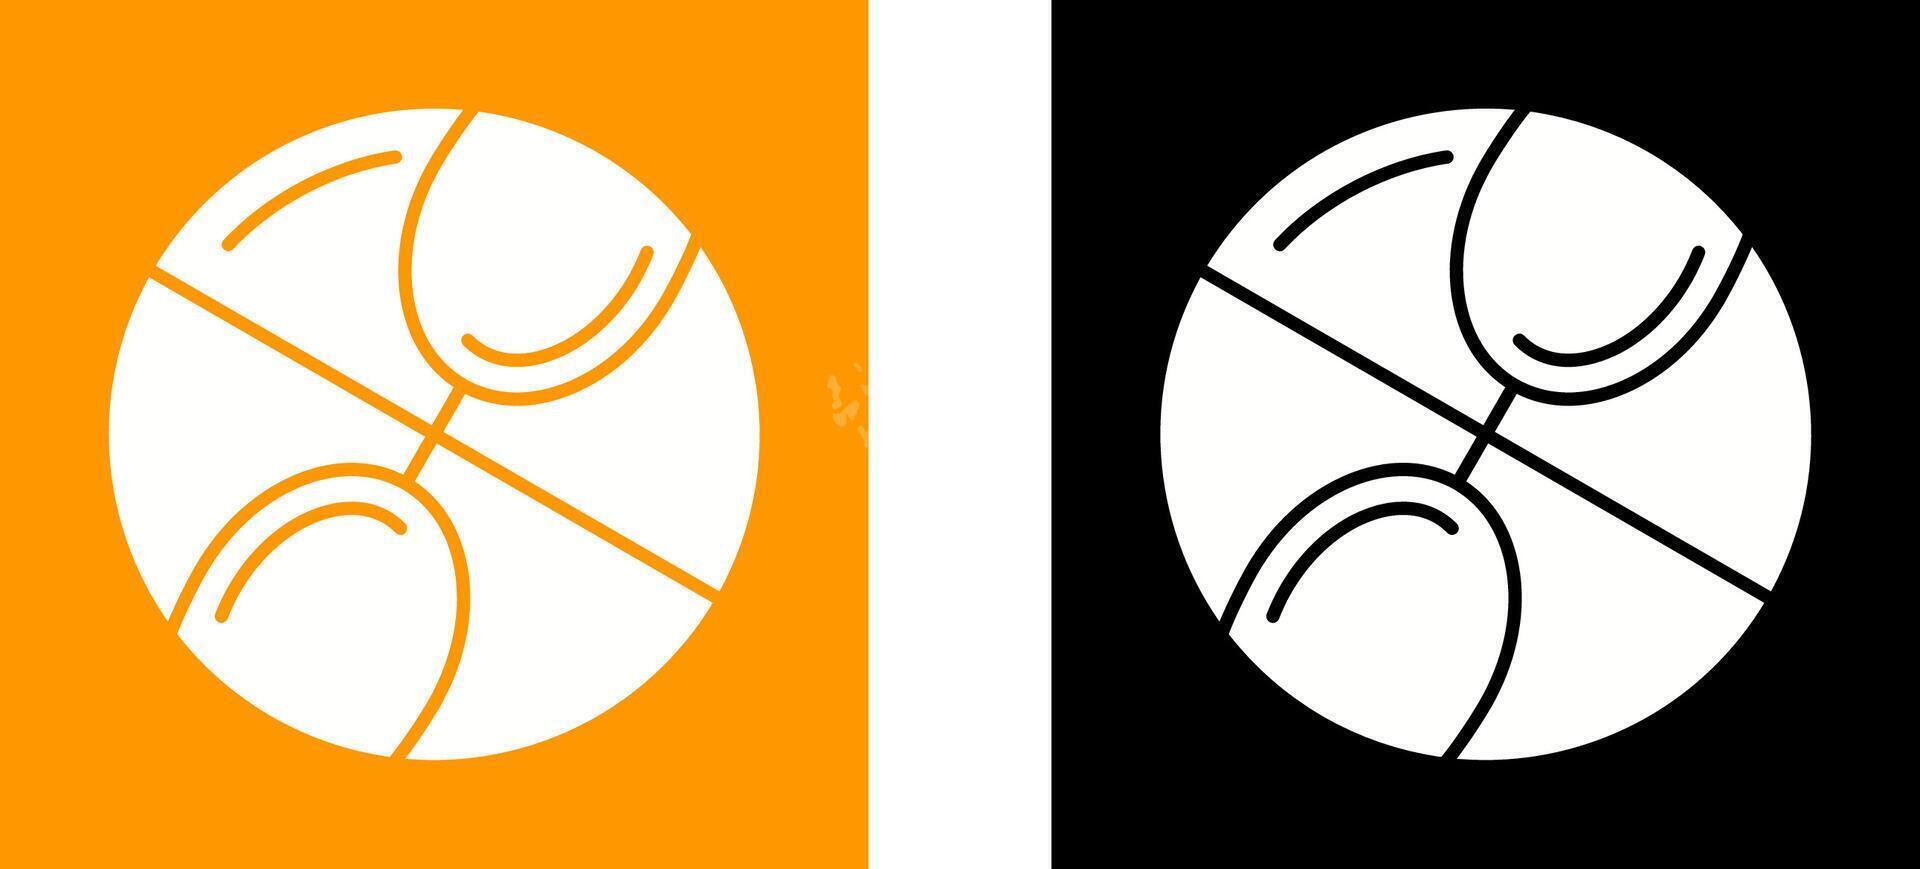 conception d'icône de basket-ball vecteur